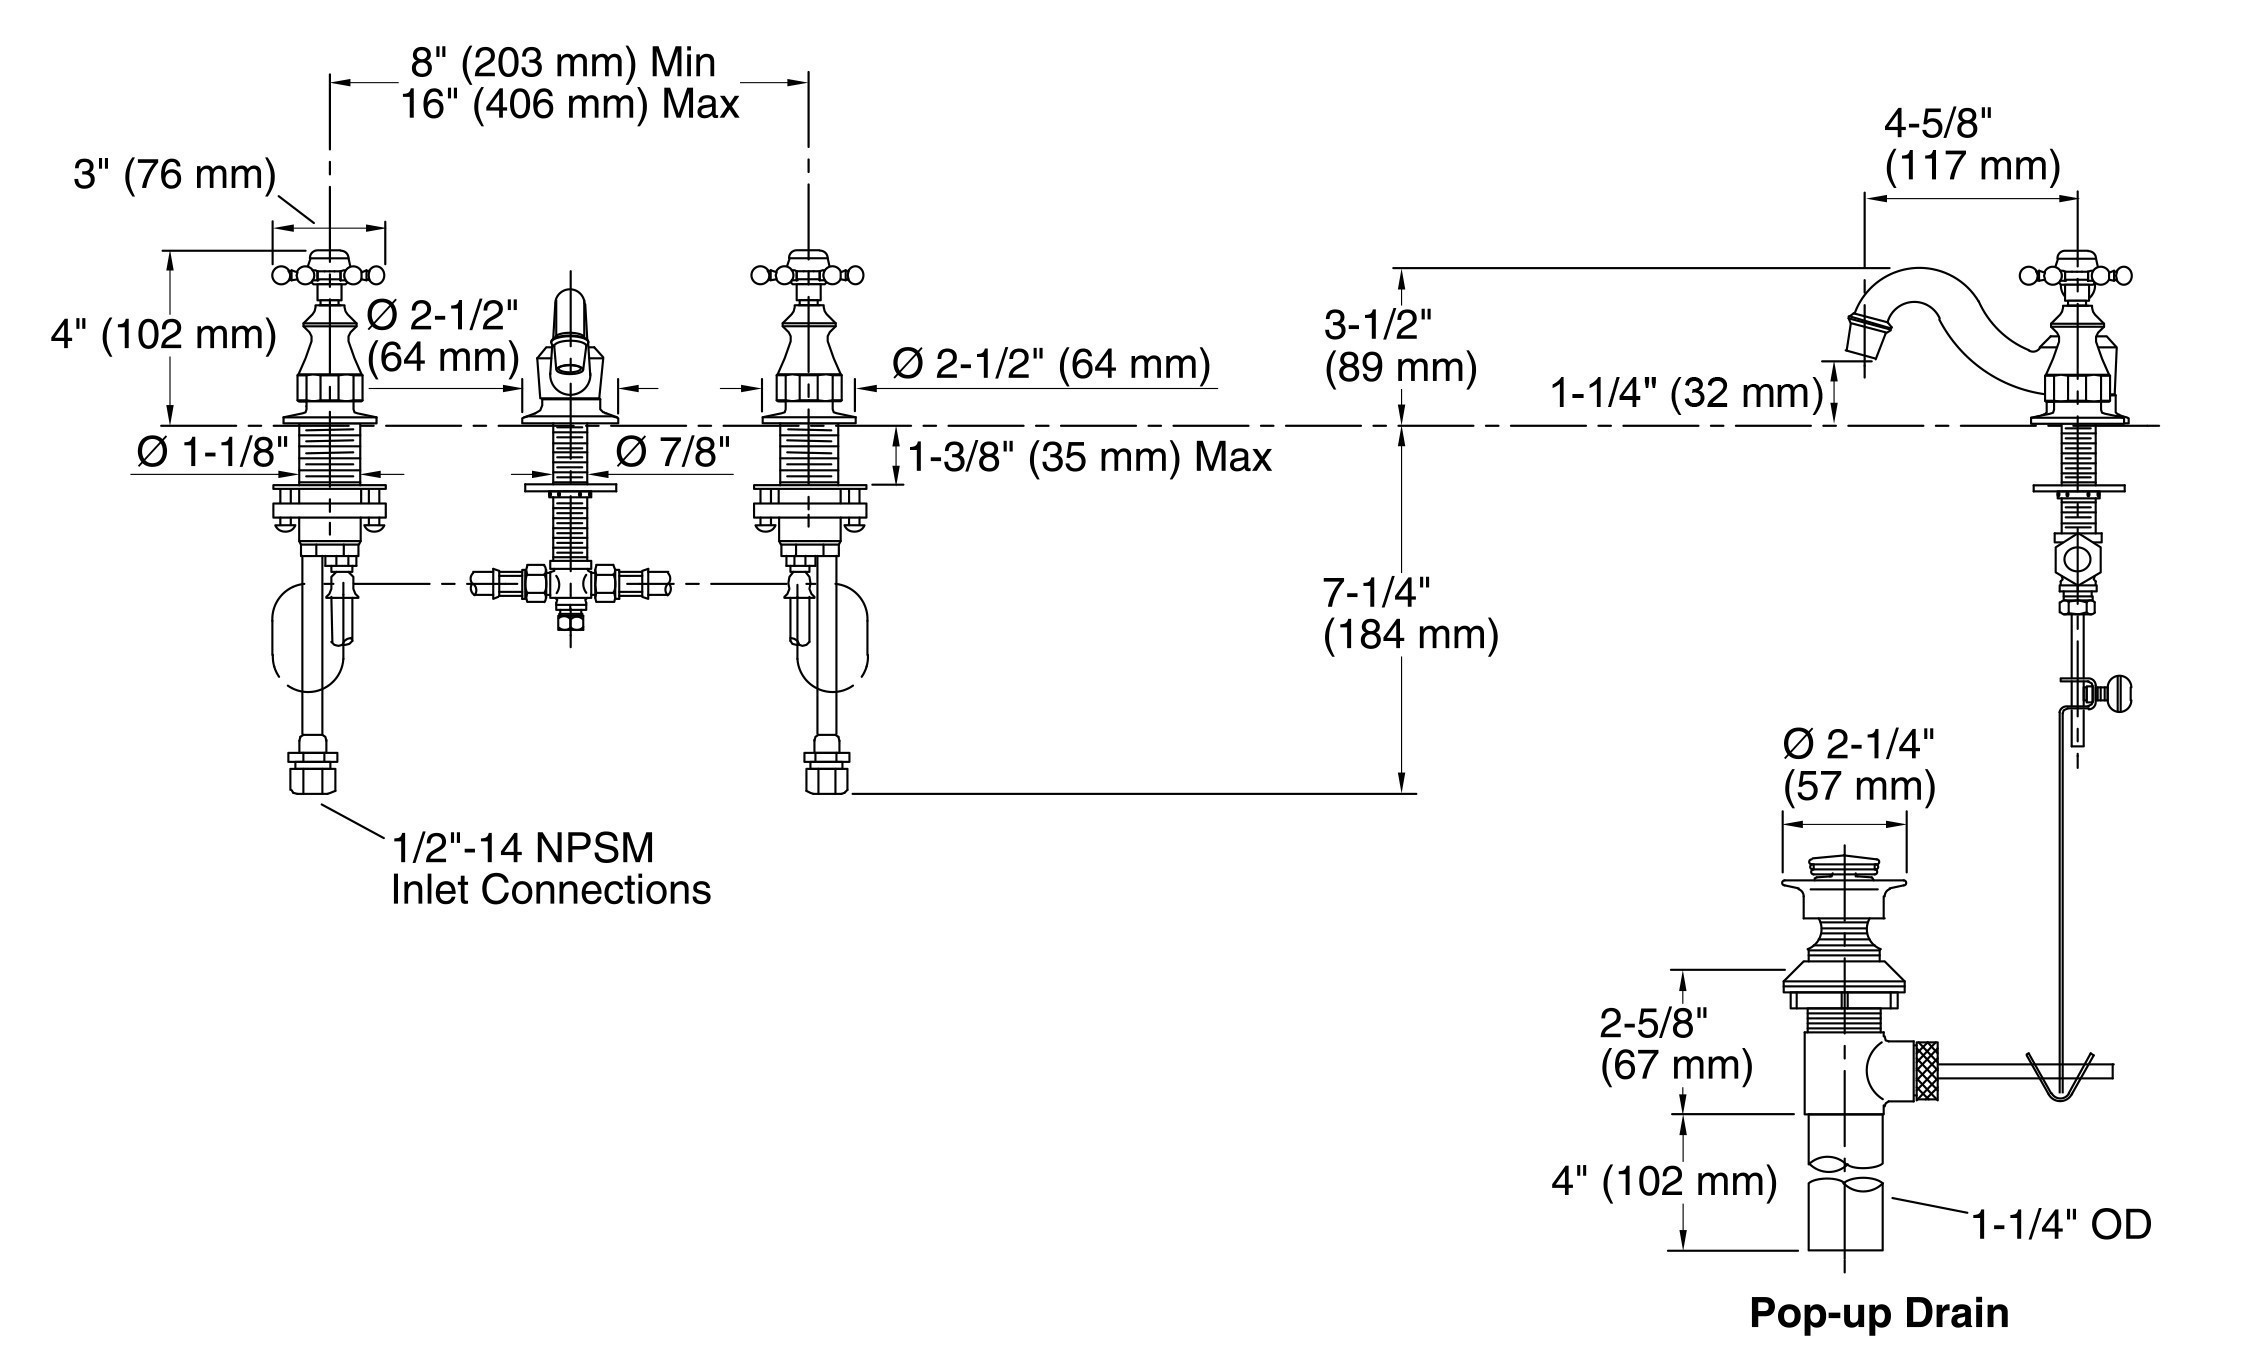 Kohler Generator Wiring Diagram Kohler Ignition Switch Wiring Diagram Best Kohler Ignition Switch Of Kohler Generator Wiring Diagram